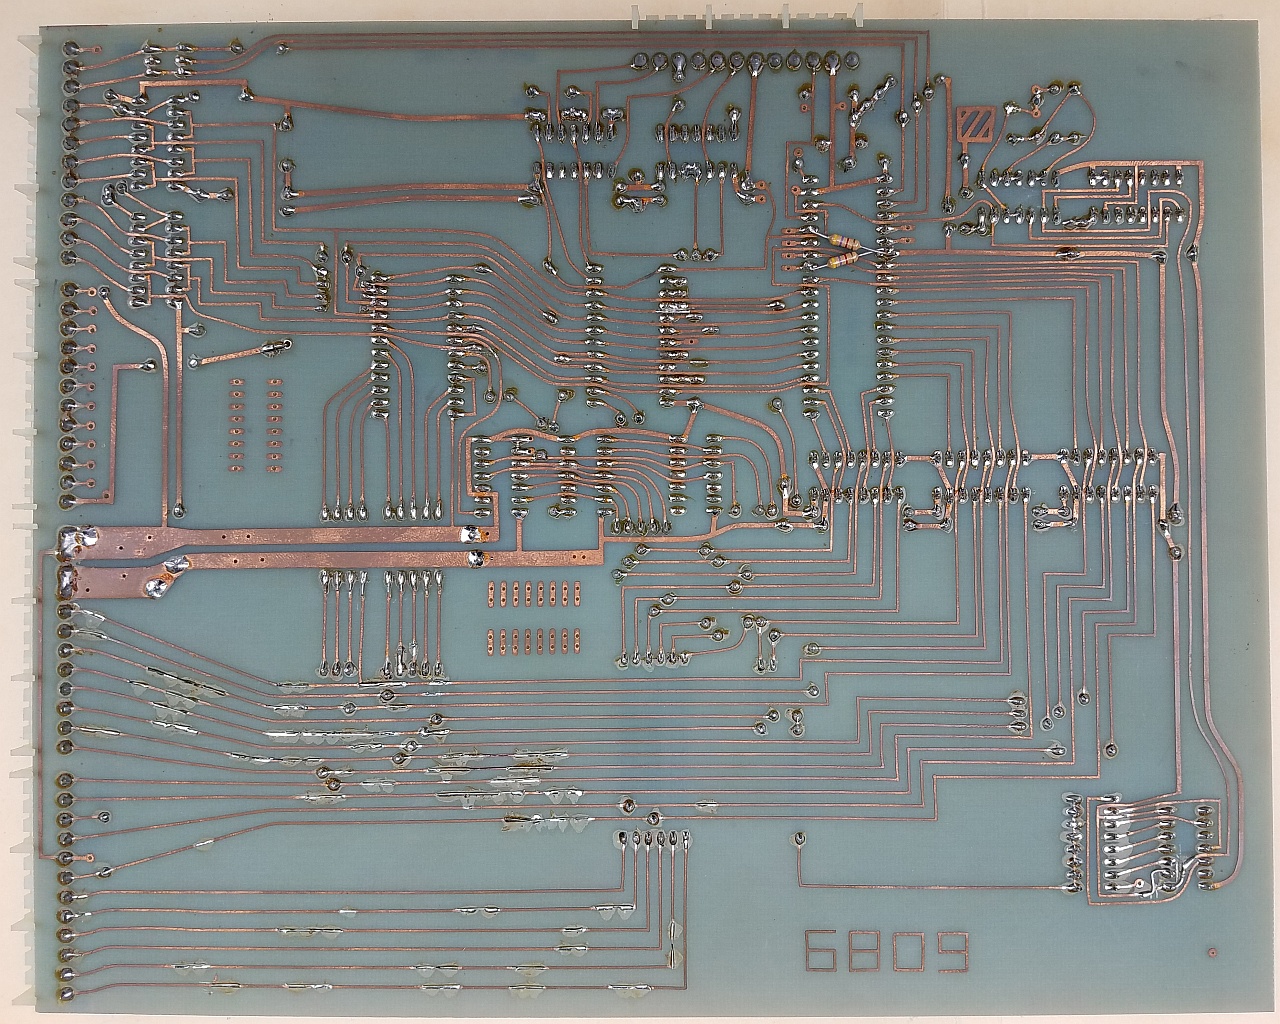 OSI-6809-Back.jpg